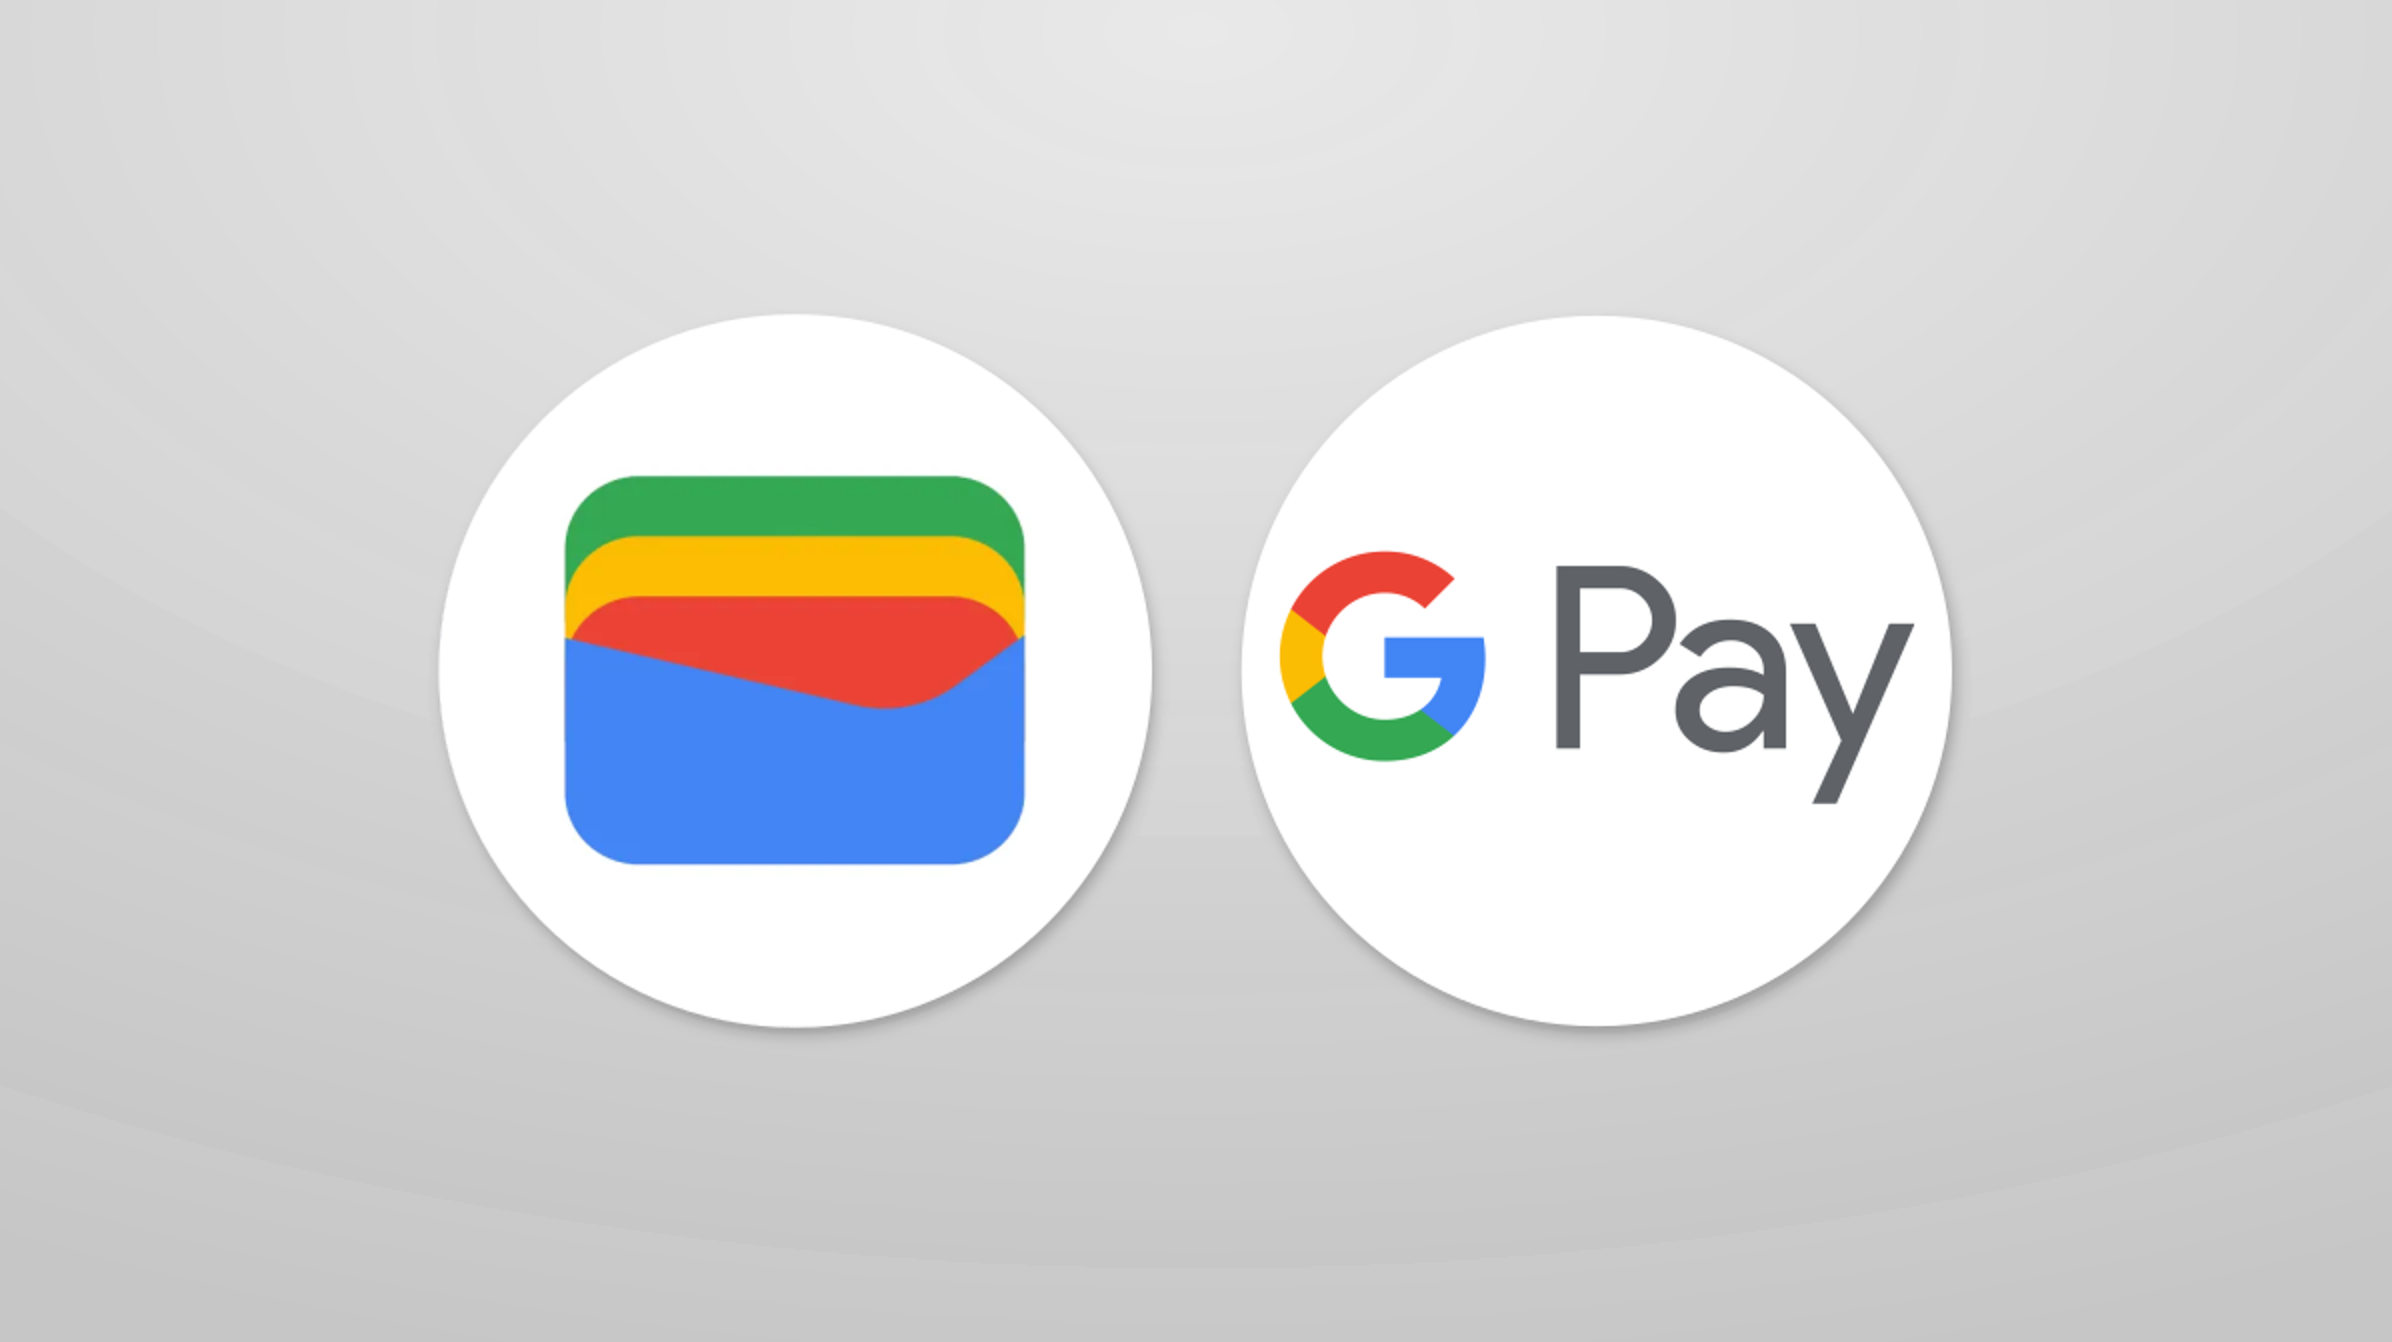 Google hat versehentlich bis zu 1000 Dollar an regelmäßige Google Pay-Nutzer verschenkt, die nicht zurückgezahlt werden müssen